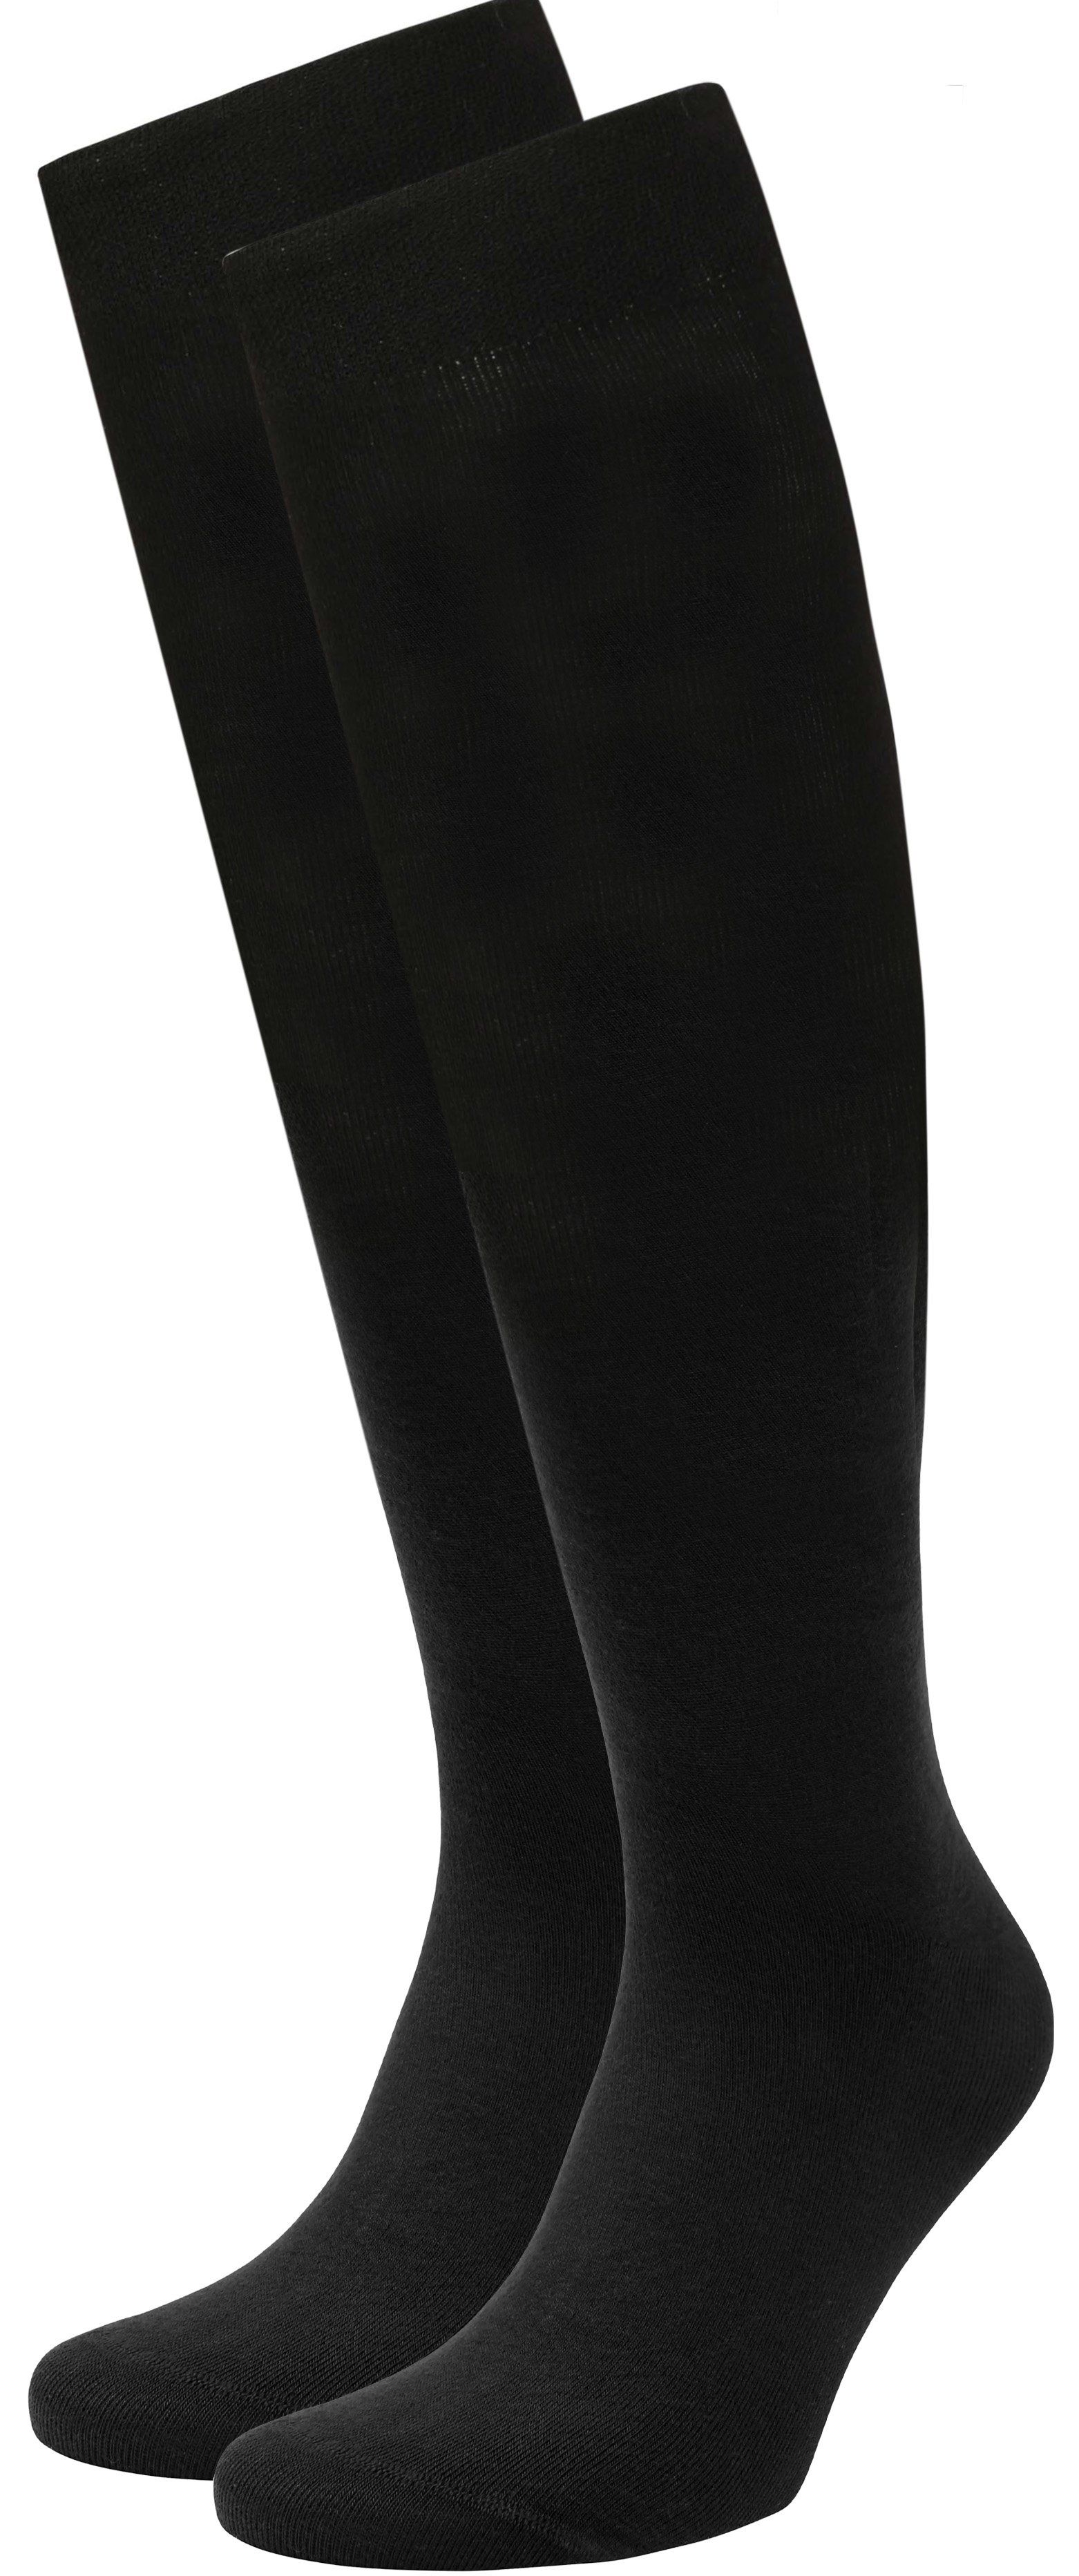 Suitable Knee-High Socks Black size 43-46